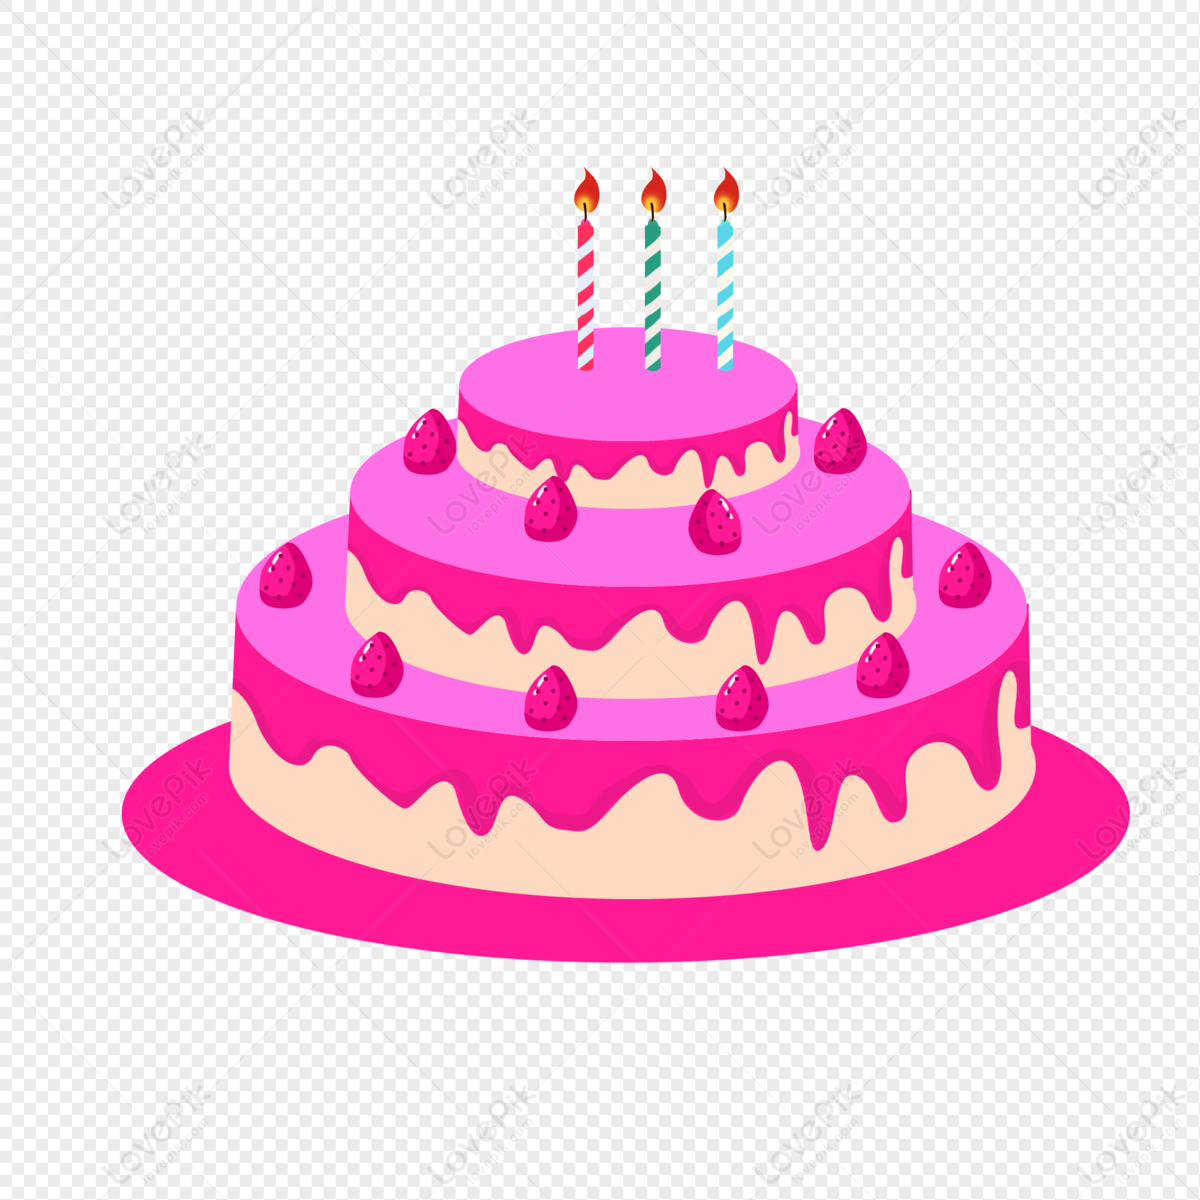 lovepik birthday cake png image 401153900 wh1200